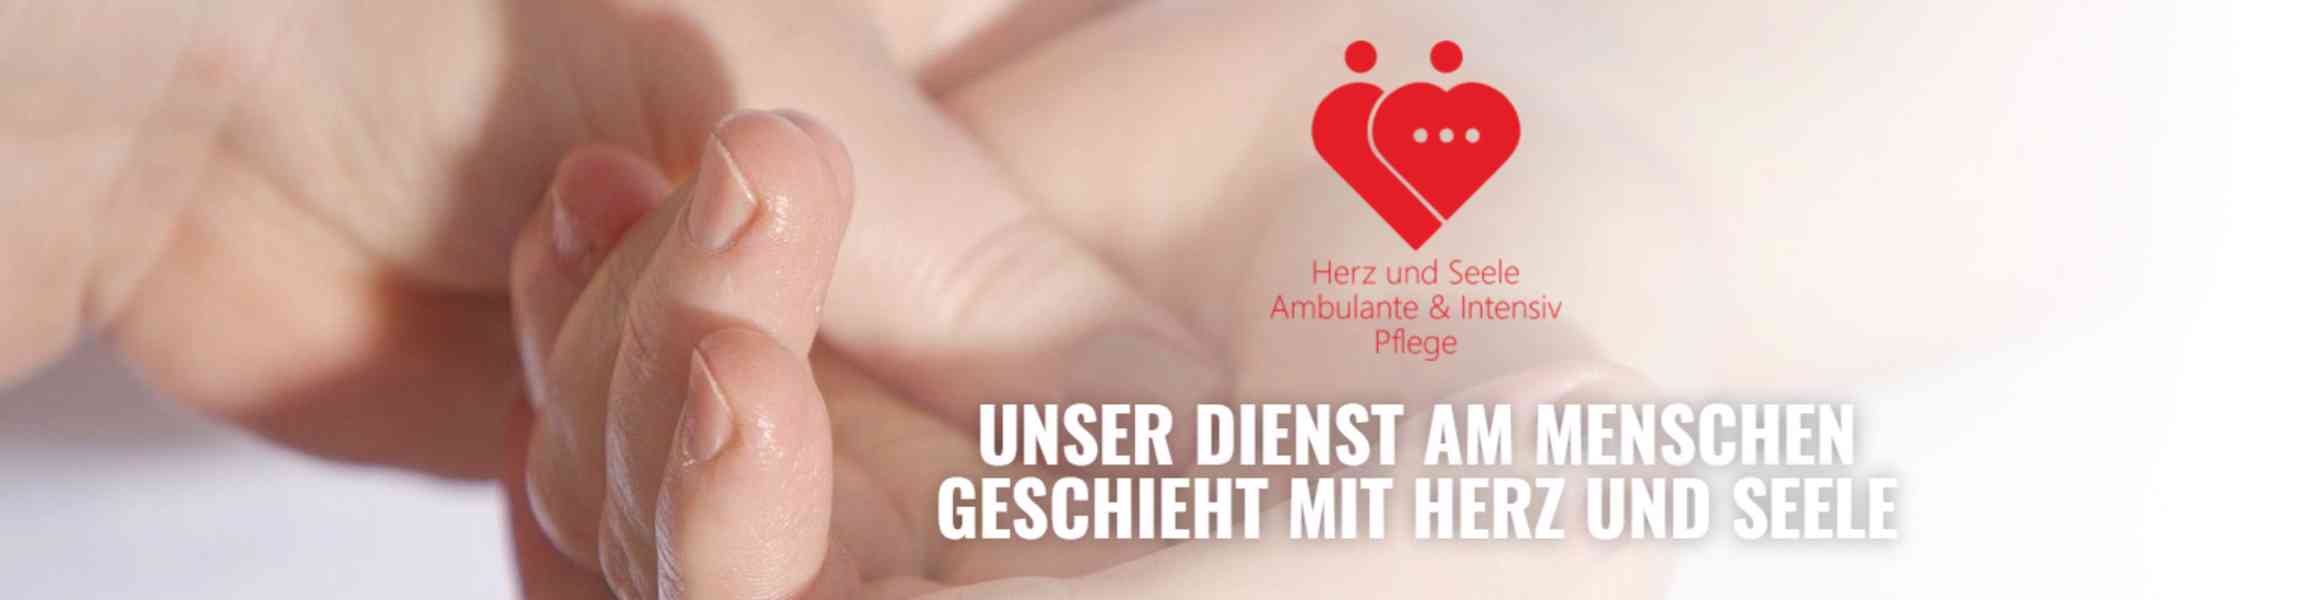 Zdravotní sestra/bratr do intenzivní domácí péče - Německo - foto 2